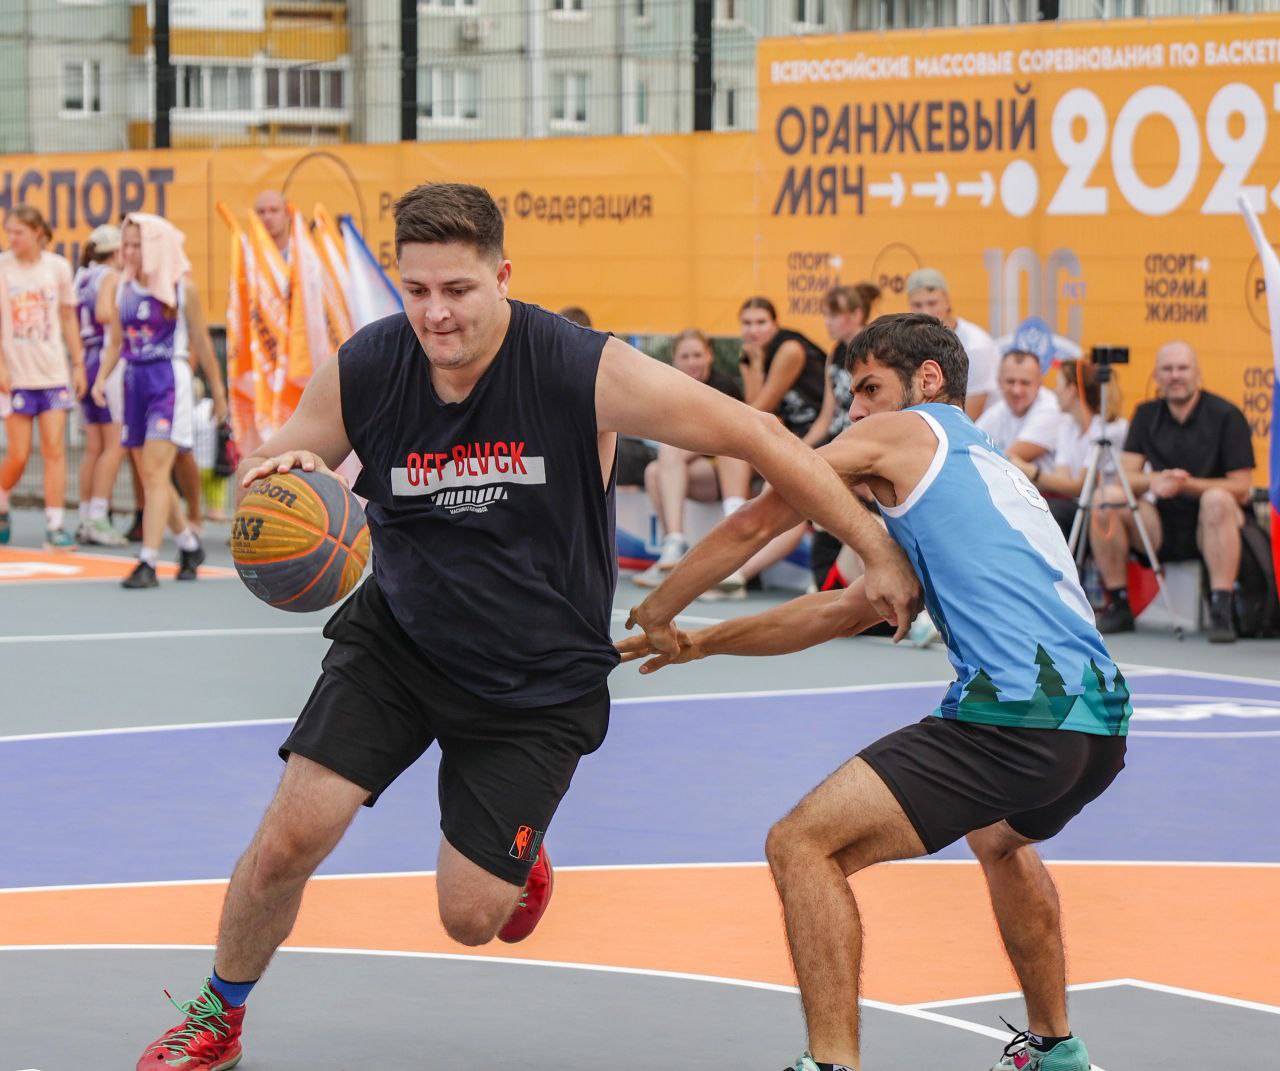 В Кемерове прошли Всероссийские соревнования по уличному баскетболу «Оранжевый мяч»